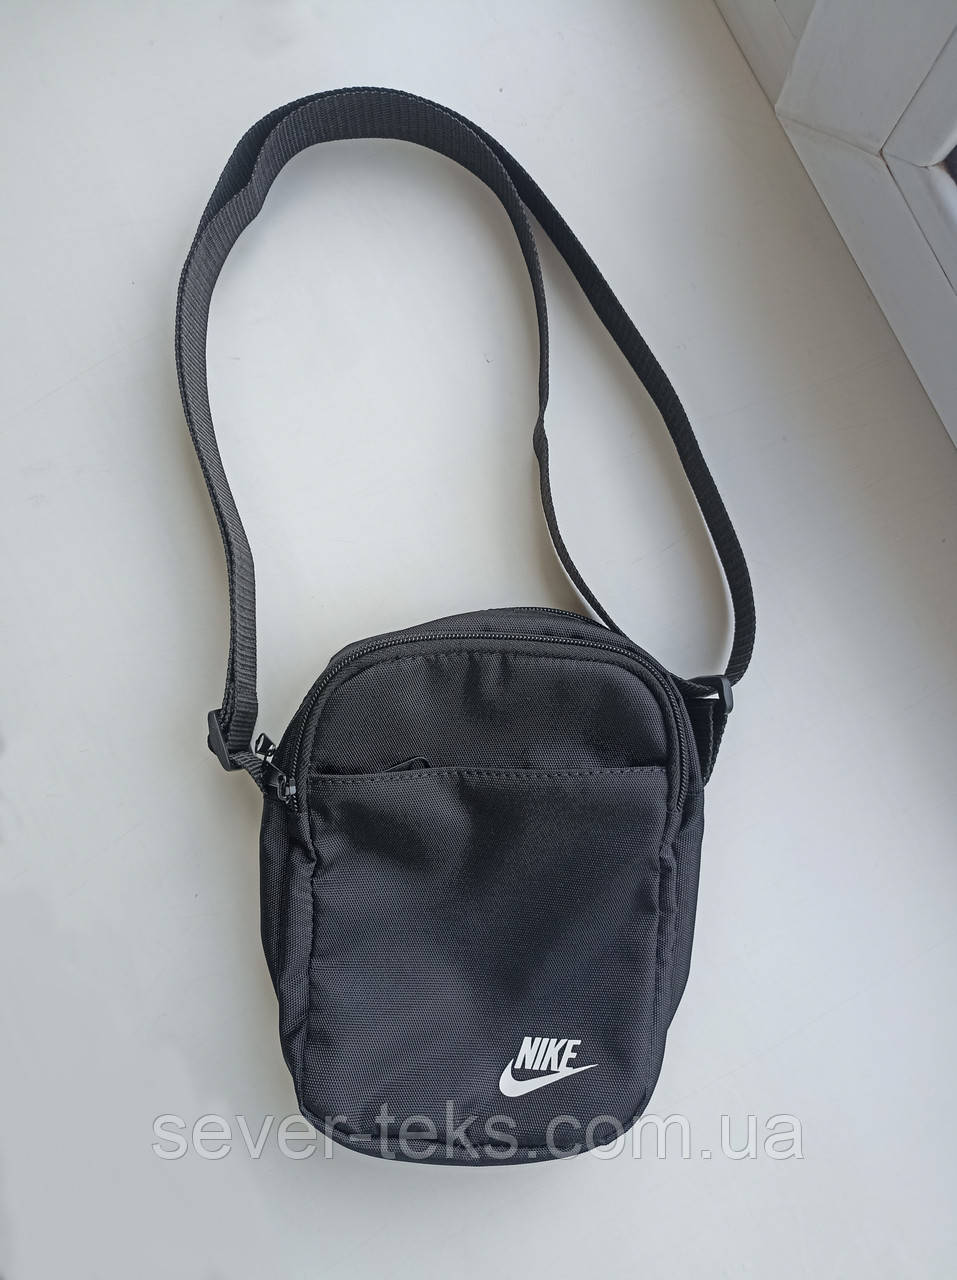 Сумка Nike чорна (Барсетка), сумка через плече